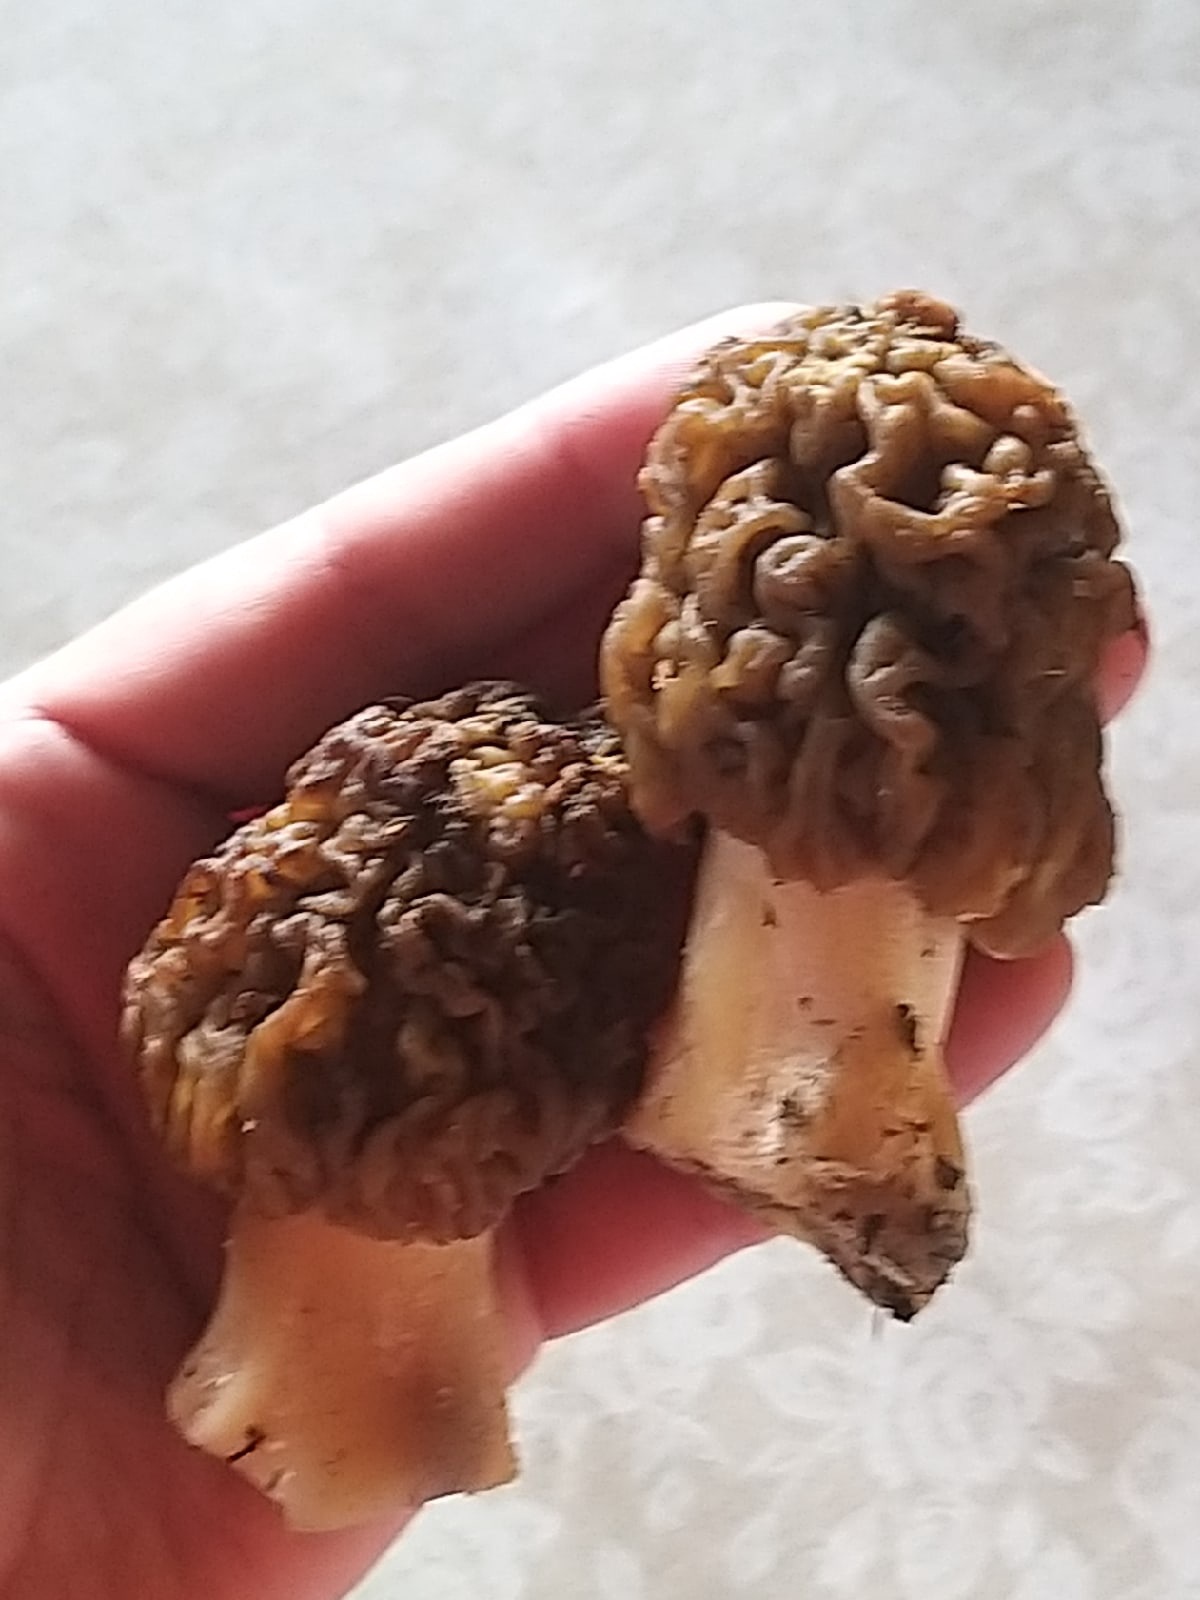 У деликатесных грибов своеобразный внешний вид, но какой вкус!